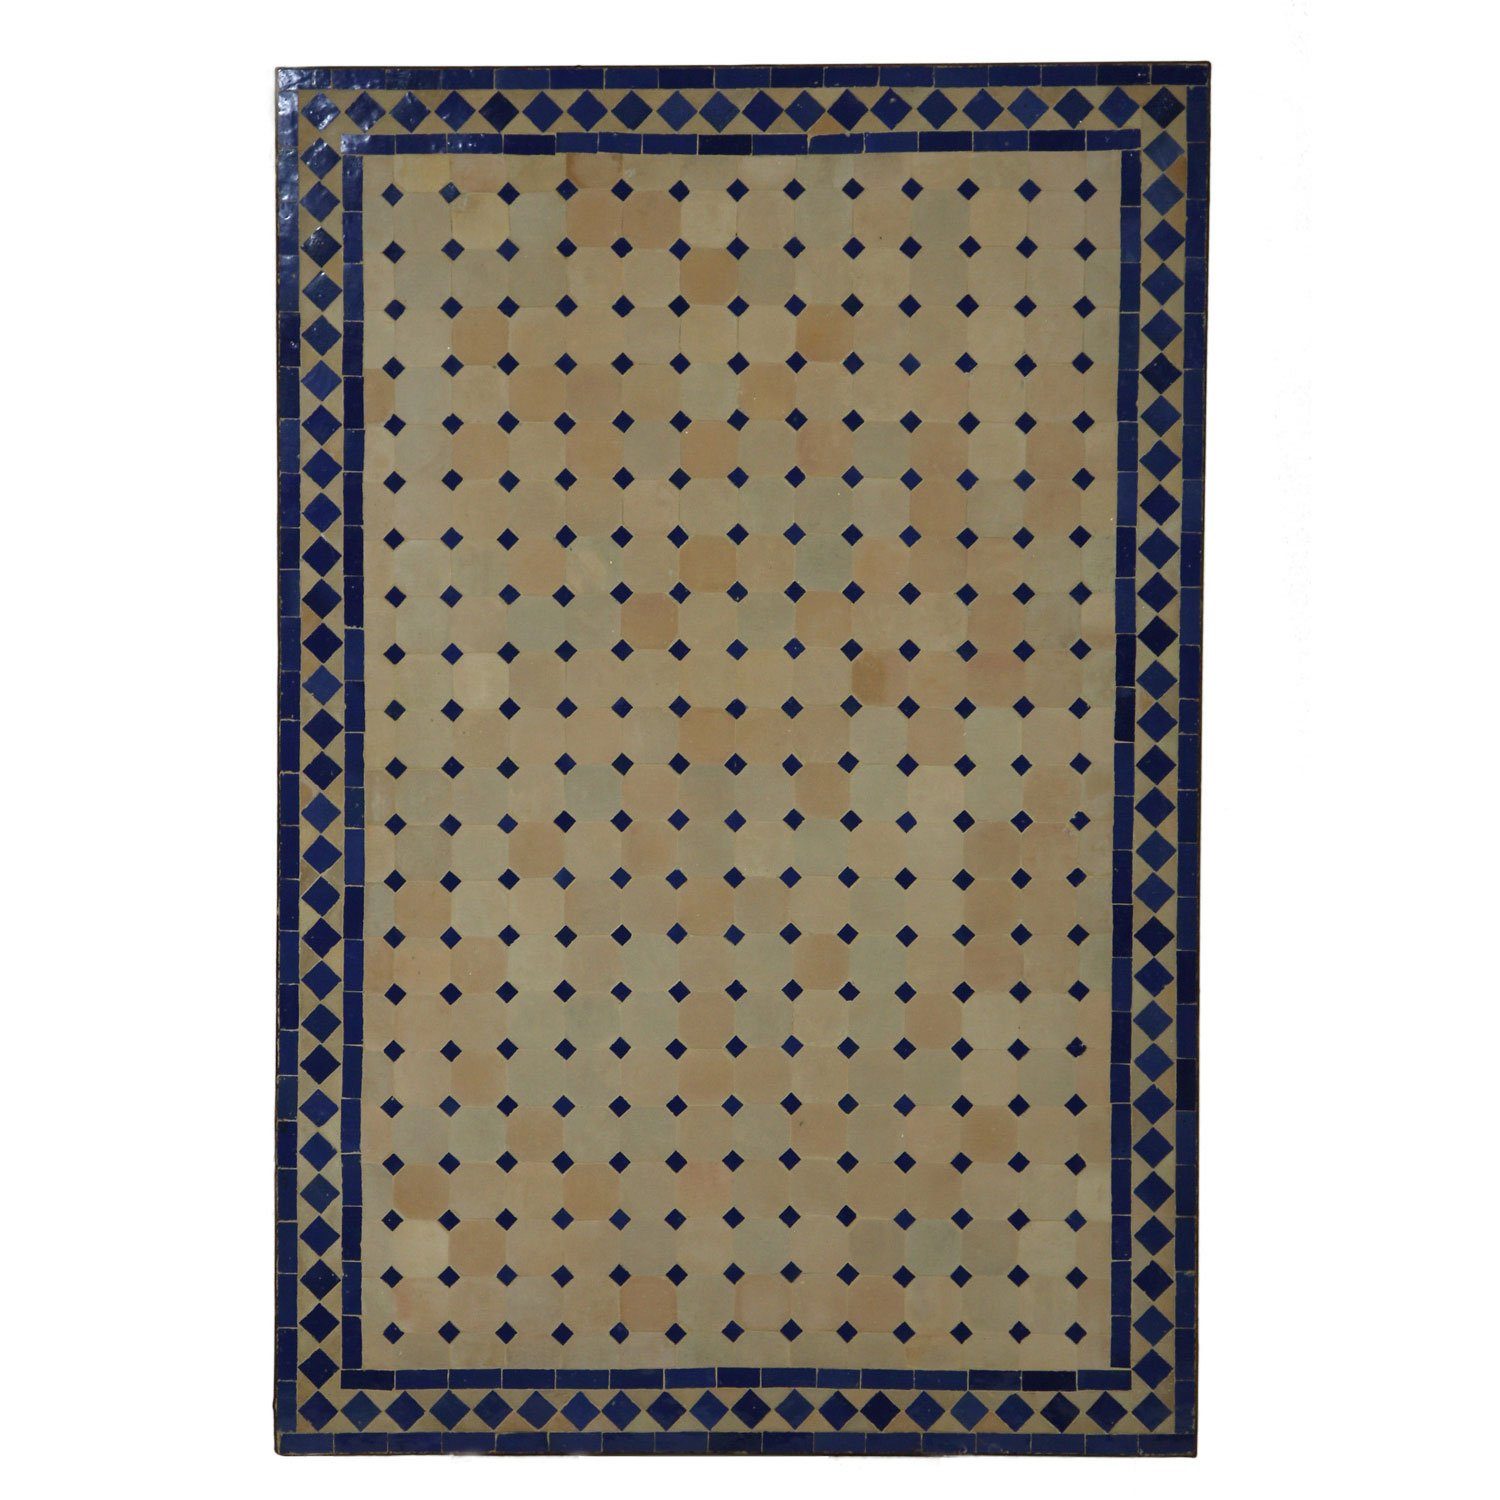 Casa Moro Gartentisch Marokkanischer Mosaiktisch 120x80 cm rechteckig blau terrakotta mit Gestell H 73 cm Dekorativer Gartentisch Esstisch Balkontisch Bistrotisch Kunsthandwerk aus Marrakesch MT2120, Handmade